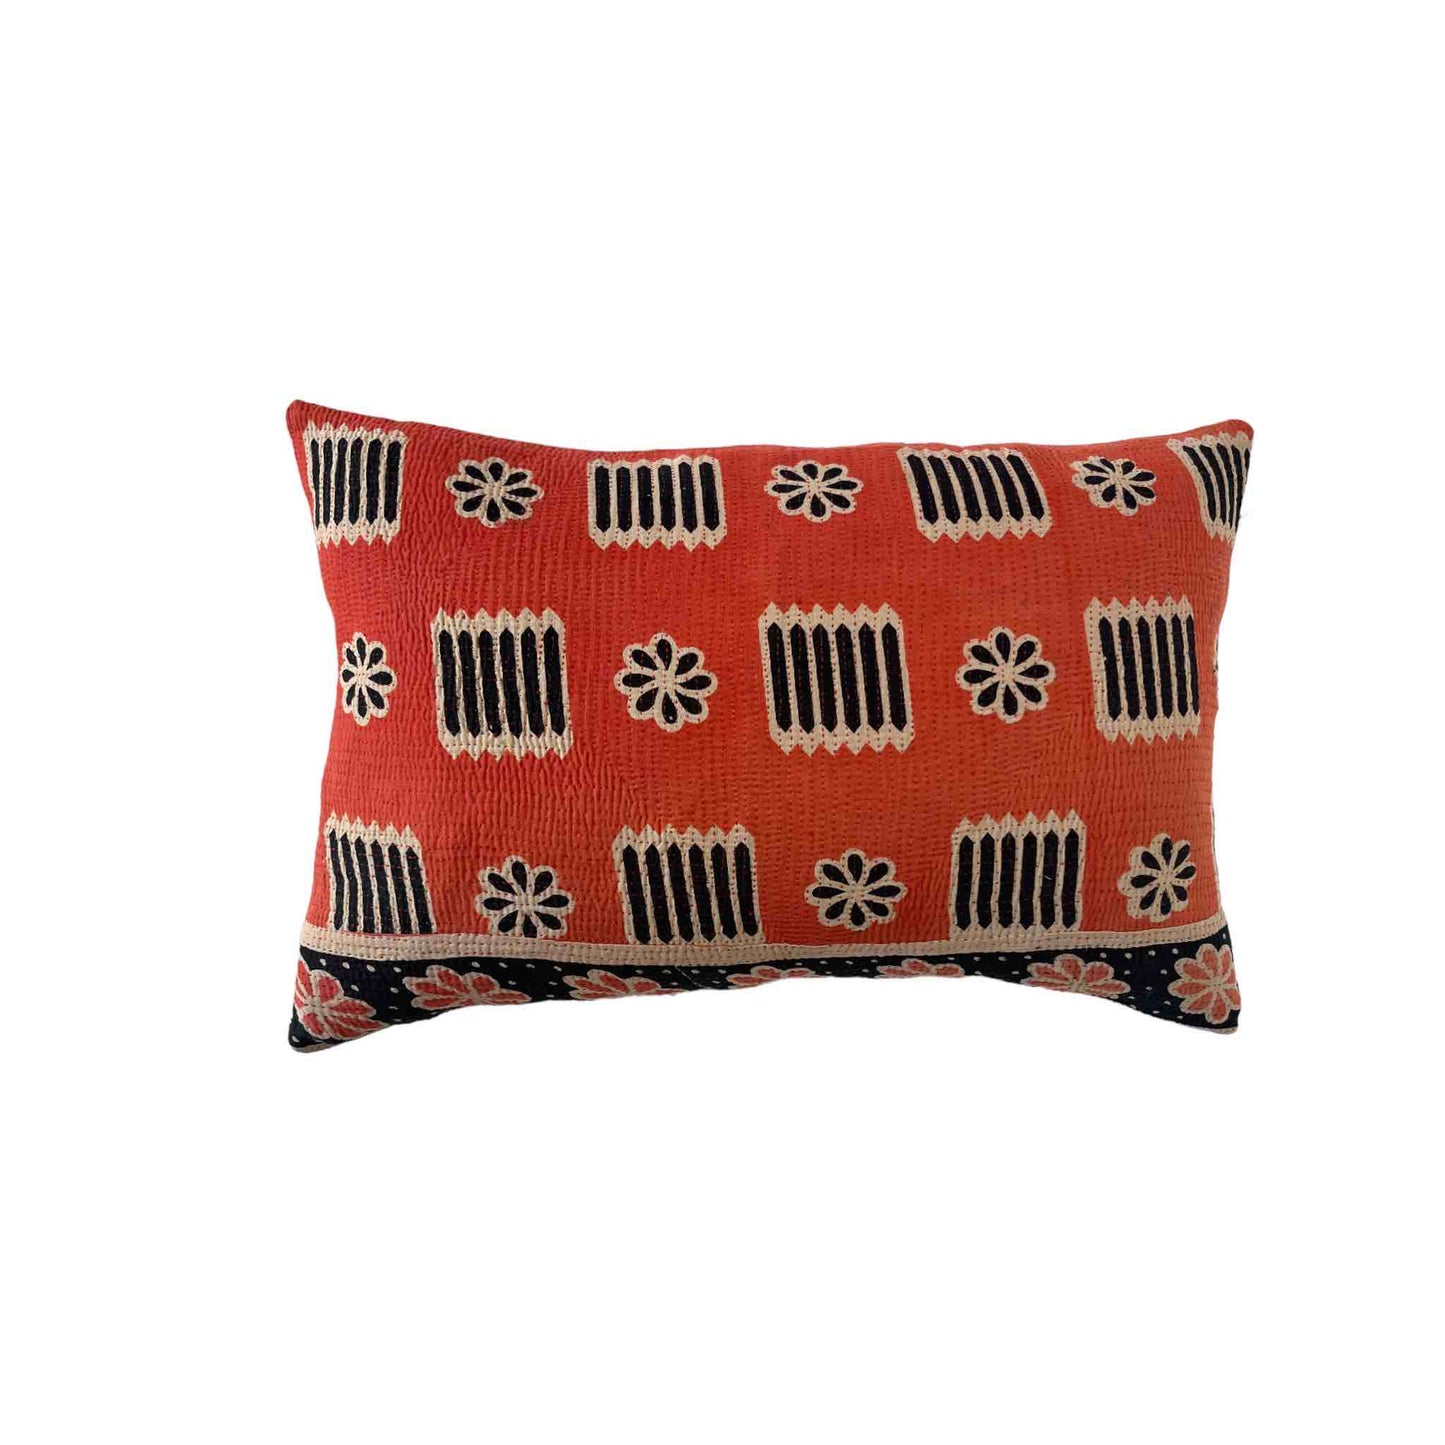 Coral and navy kantha cushion